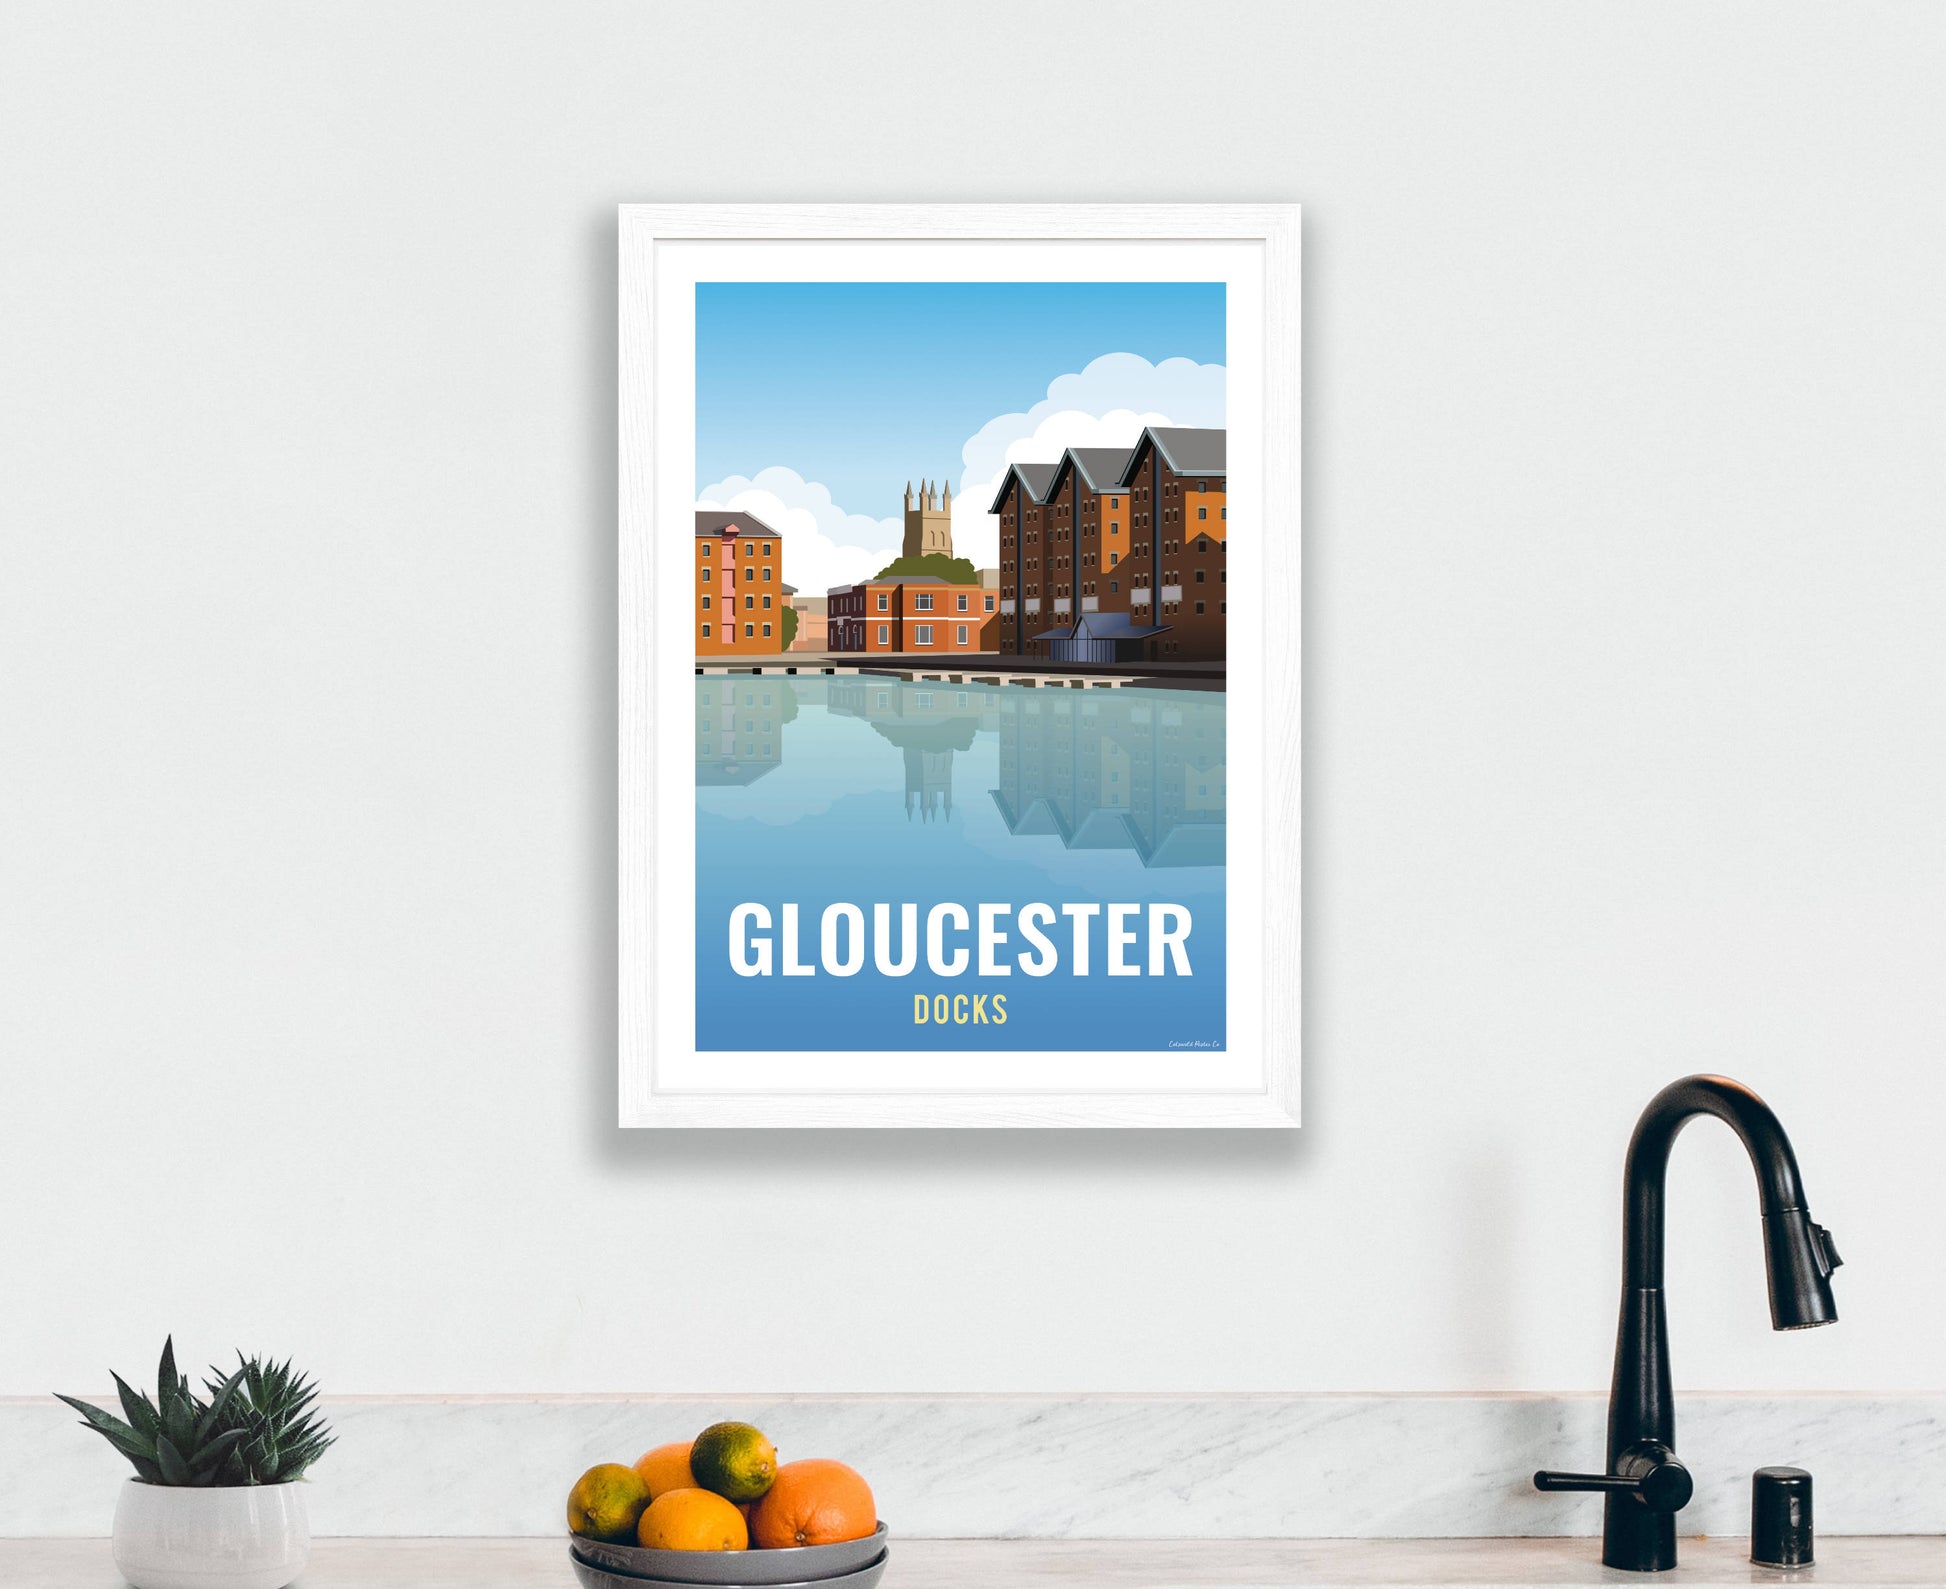 Gloucester Docks Poster interior white frame